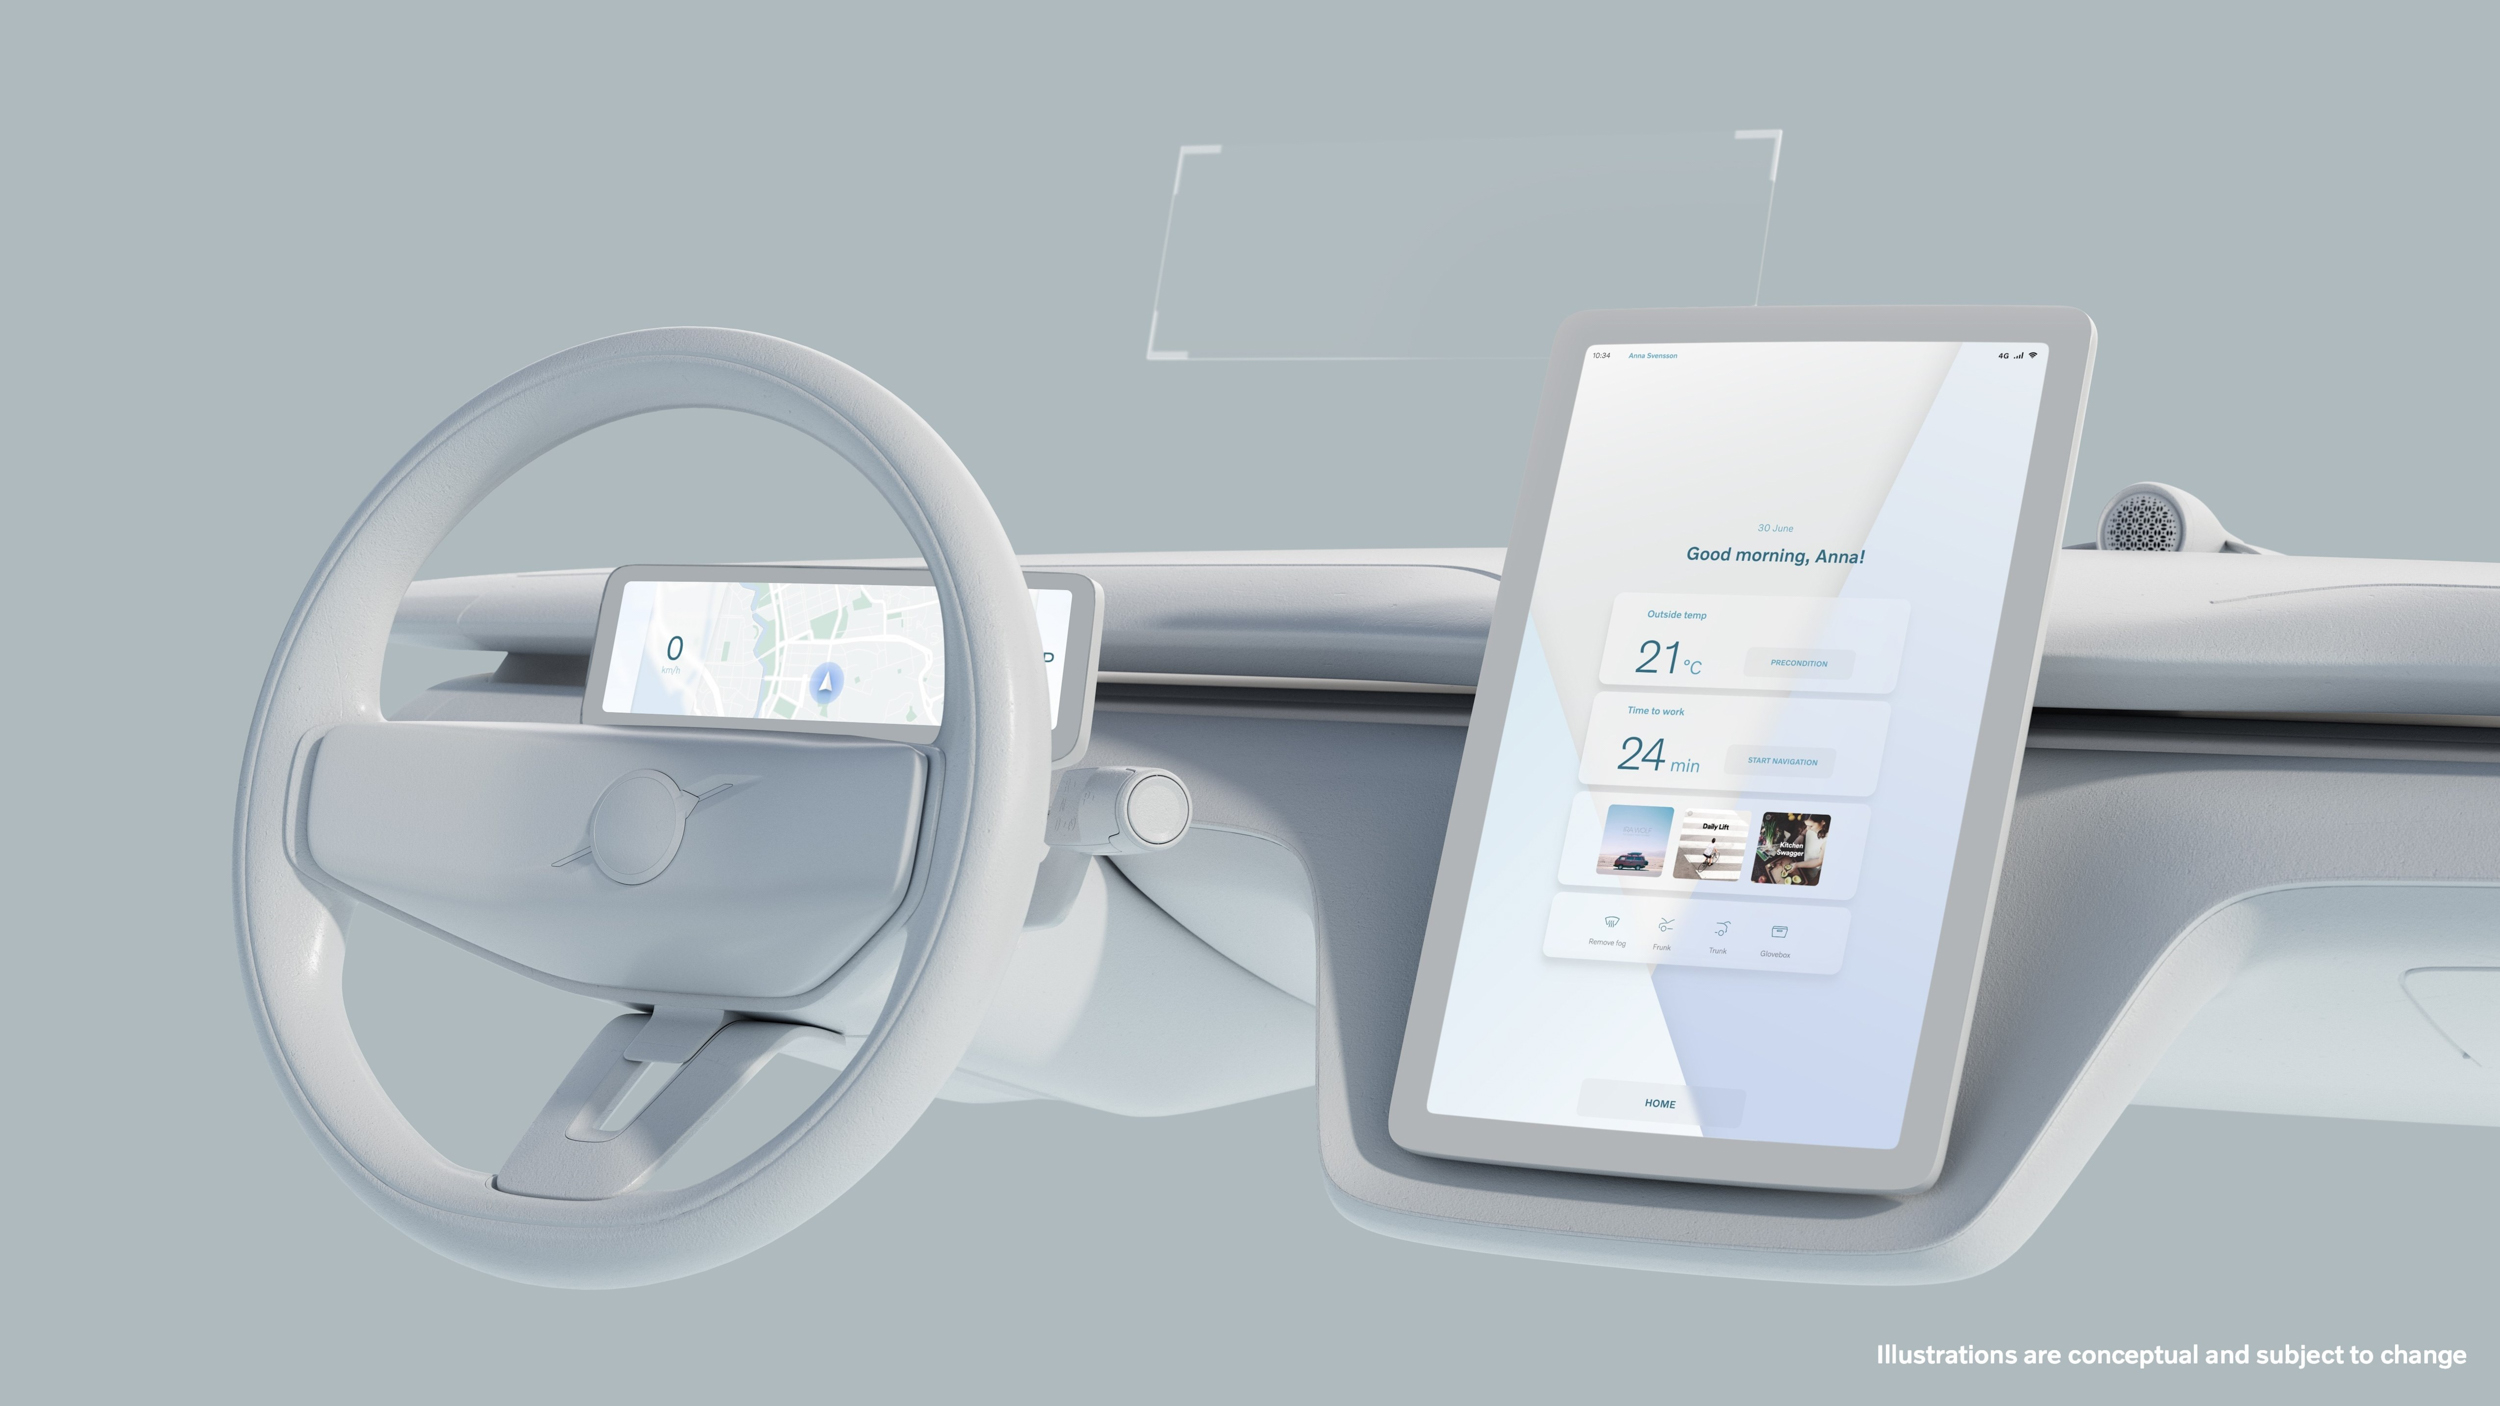 透過 Volvo 與 Google 工程師的通力合作，簡化操作方式與優化使用介面，駕駛能依需求輕鬆獲取行車資訊，透過大型且訊息集中的觸控螢幕整合各項功能，客戶可以透過觸摸或語音輕易操作。